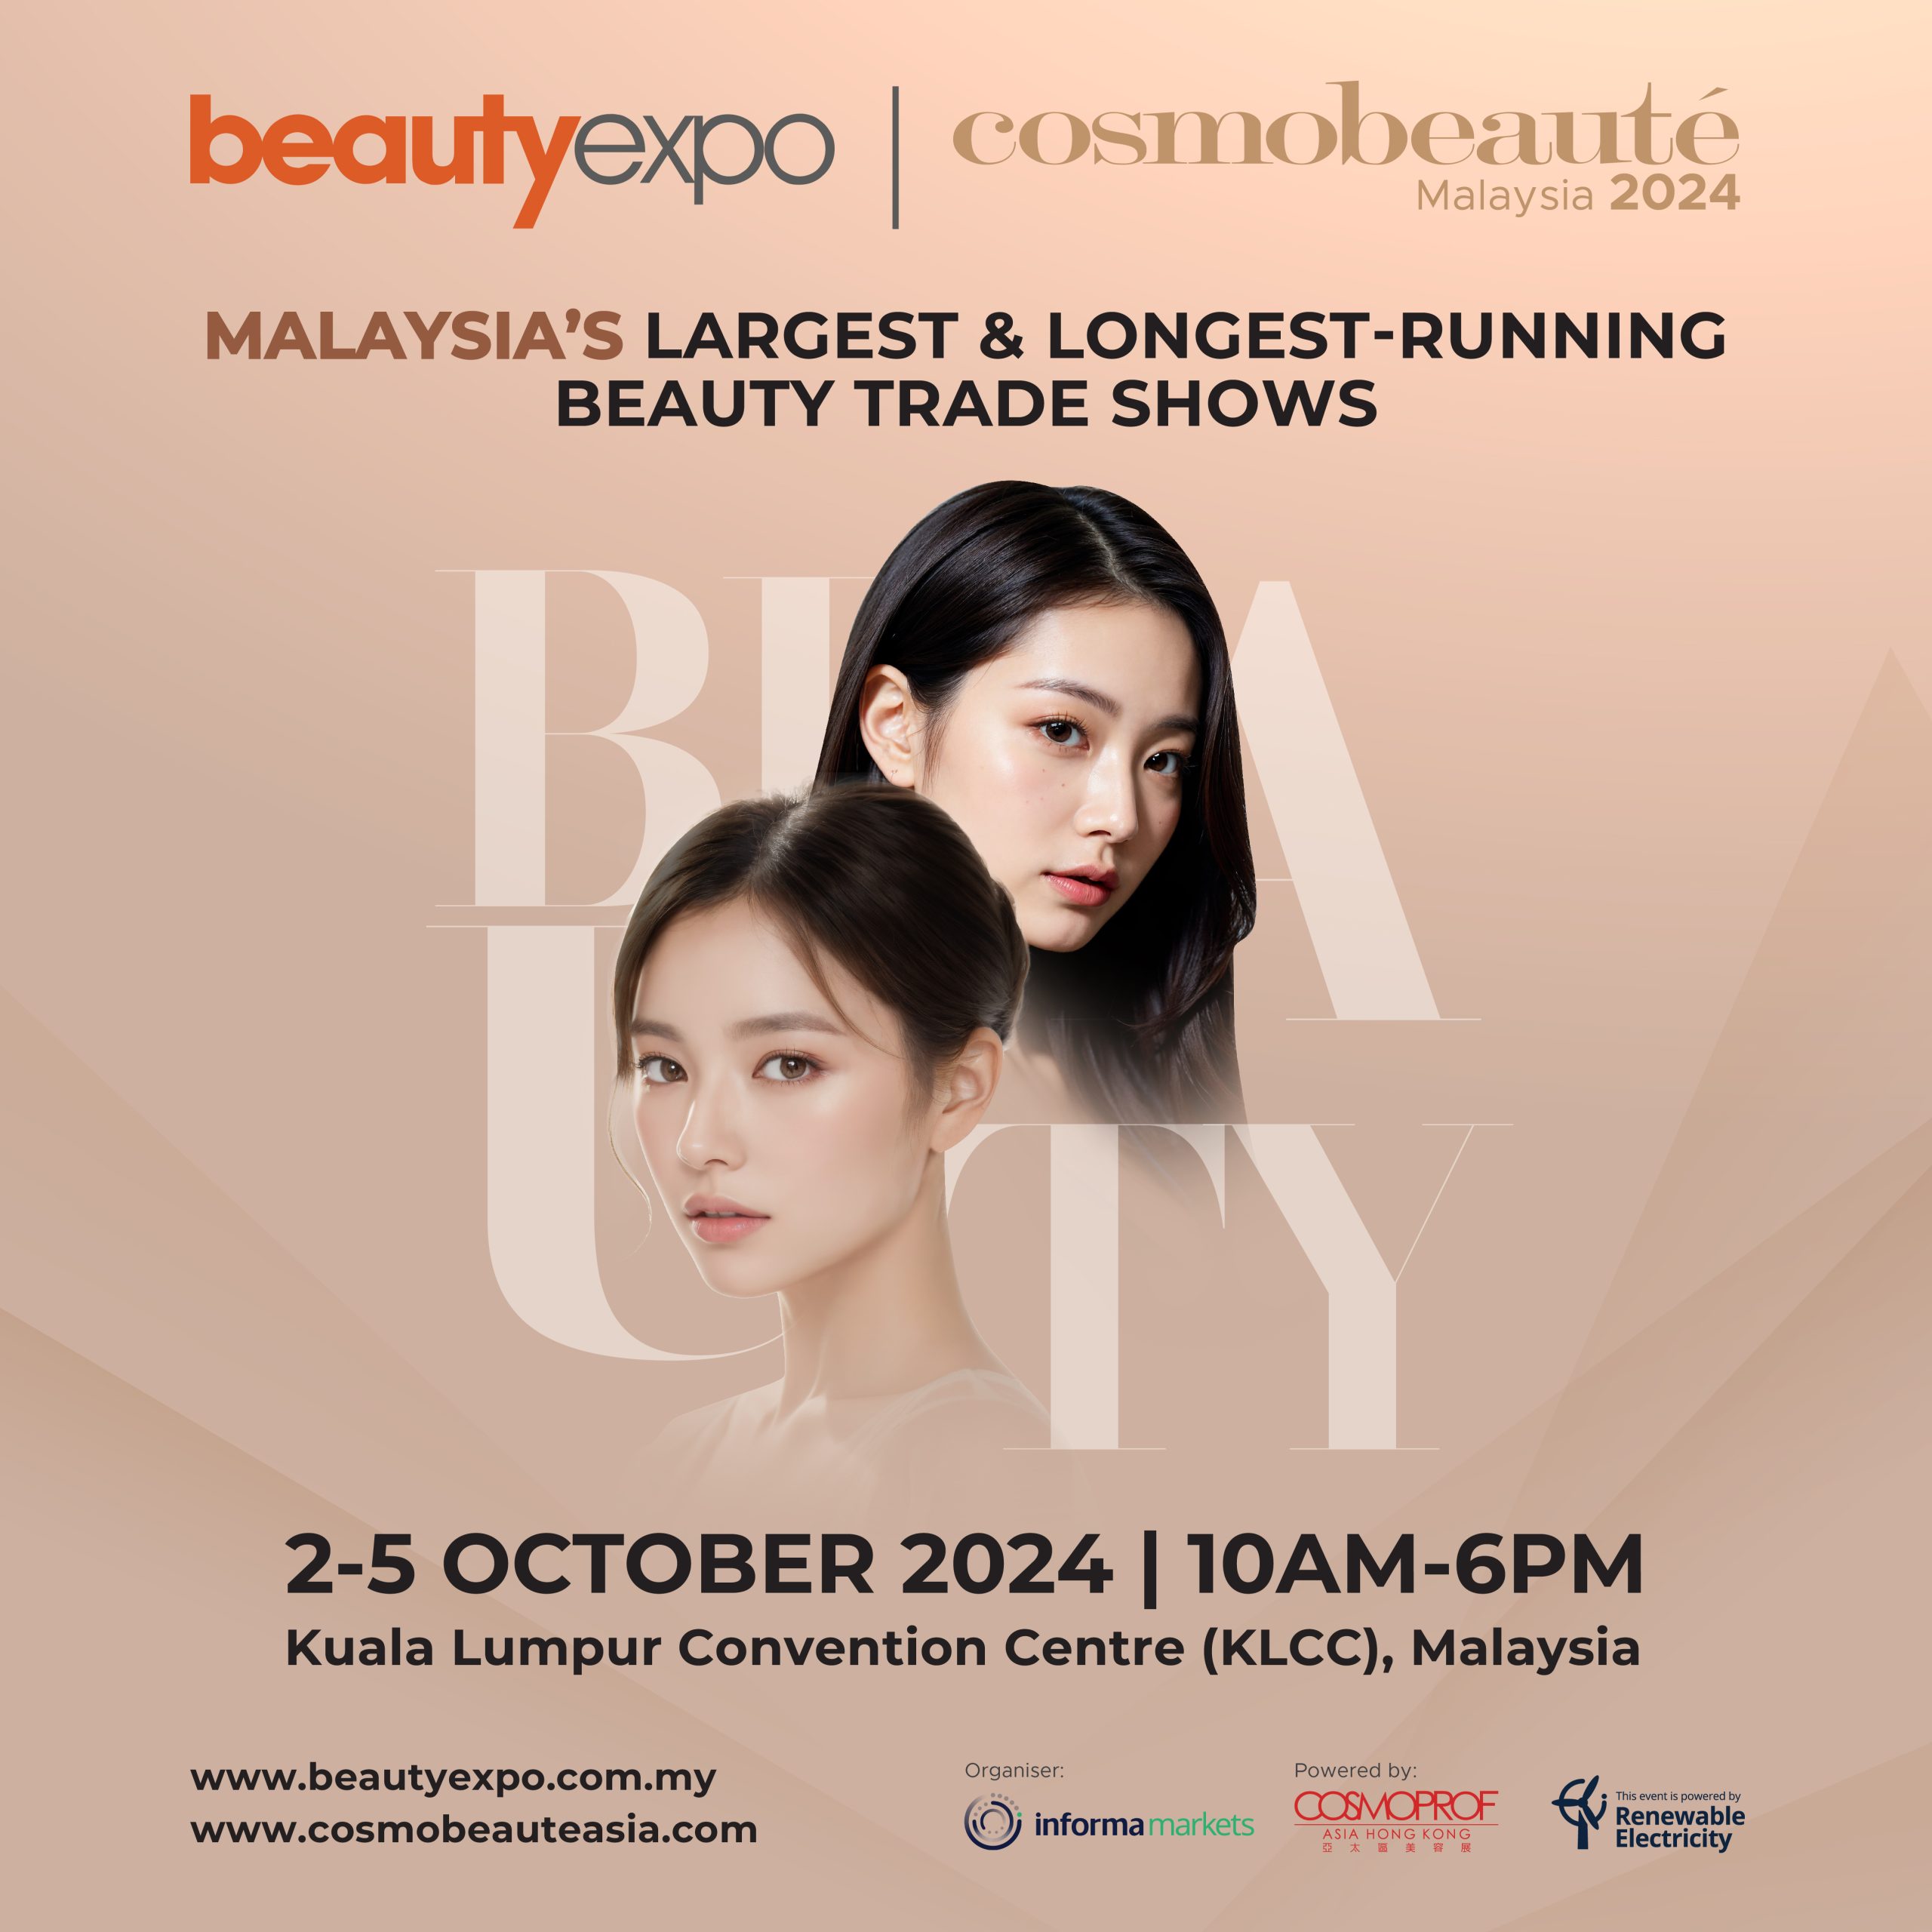 beautyexpo & Cosmobeaute Malaysia 2024